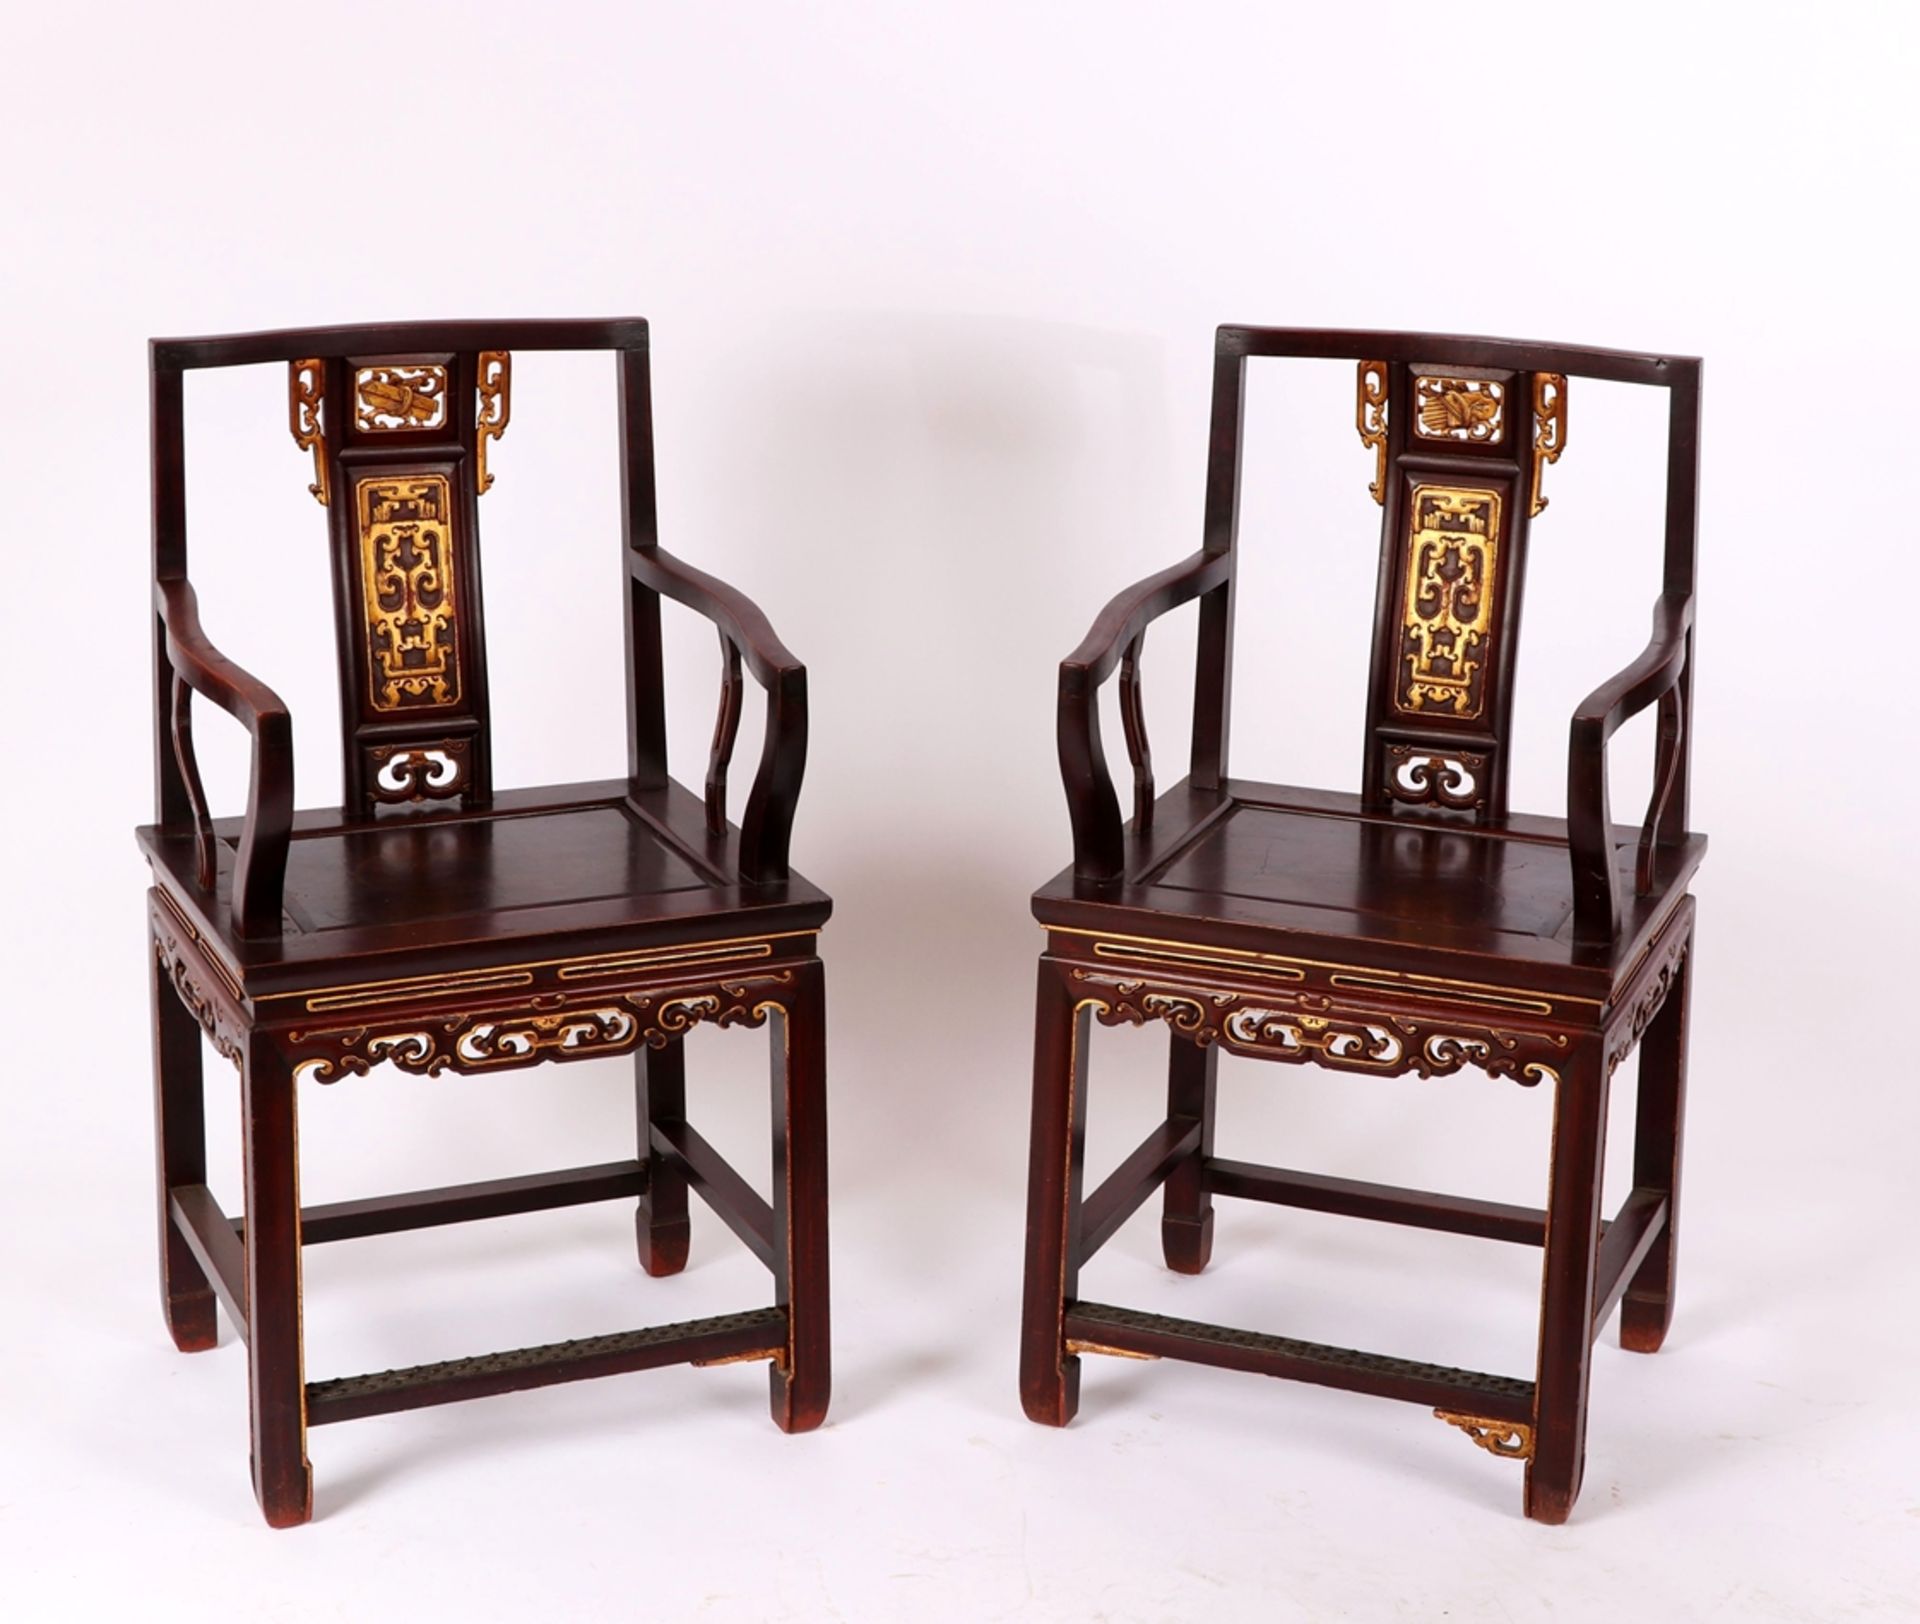 Paar Armlehnstühle, China um 1900Hartholz, braune Fassung, geschnitzte, vergoldete Elemente. Guter